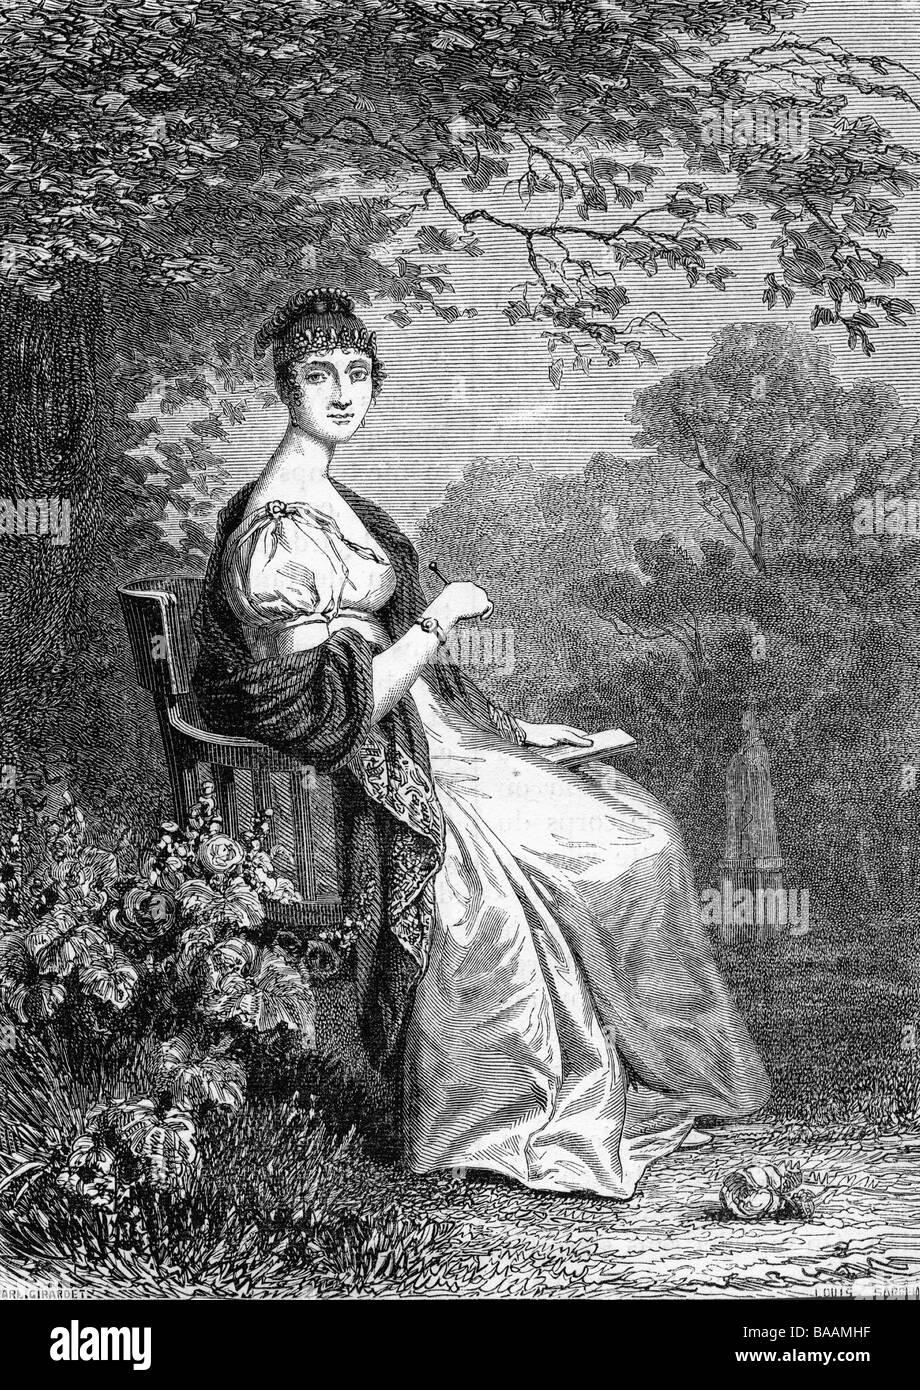 Beauharnais, Hortense de, 10.4.1783 - 5.10.1837, figliastra di Napoleone i di Francia, a tutta lunghezza, seduto in giardino, incisione in legno, 19th secolo, Foto Stock